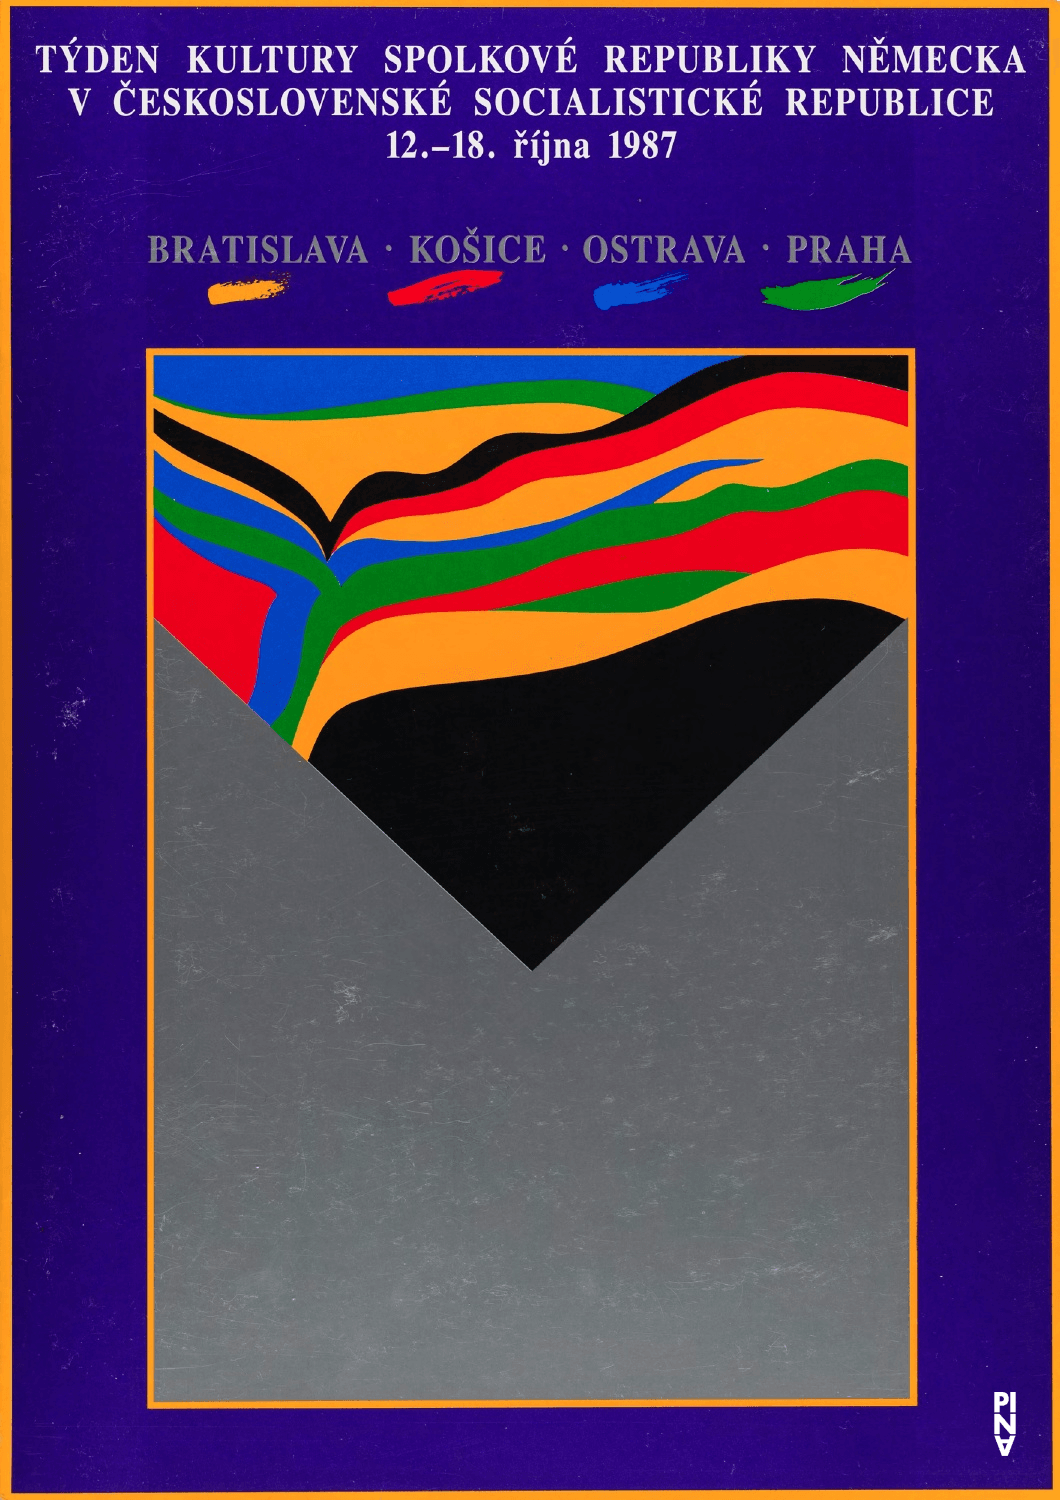 Calendrier des spectacles pour « Café Müller » et « Le Sacre du printemps » de Pina Bausch avec Tanztheater Wuppertal à Košice et Prague, 12 oct. 1987 – 16 oct. 1987